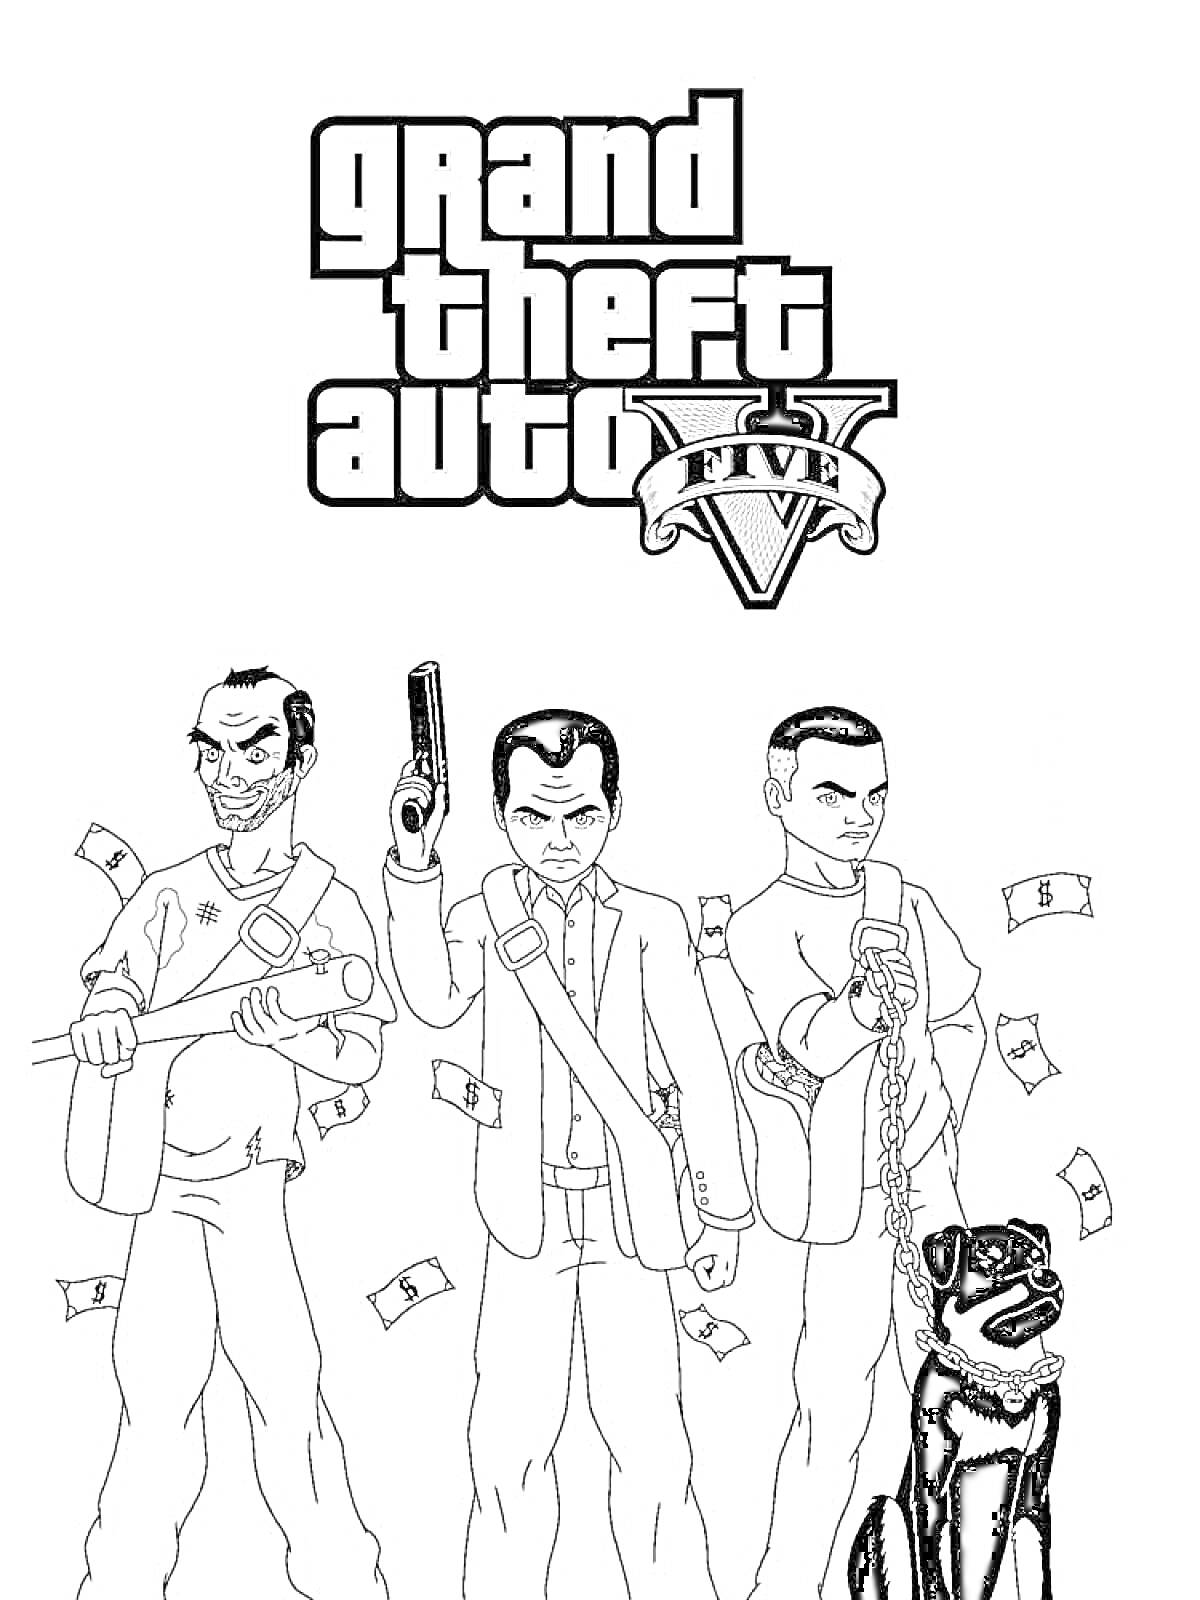 Три персонажа Grand Theft Auto V с оружием и собакой, разбросанные деньги